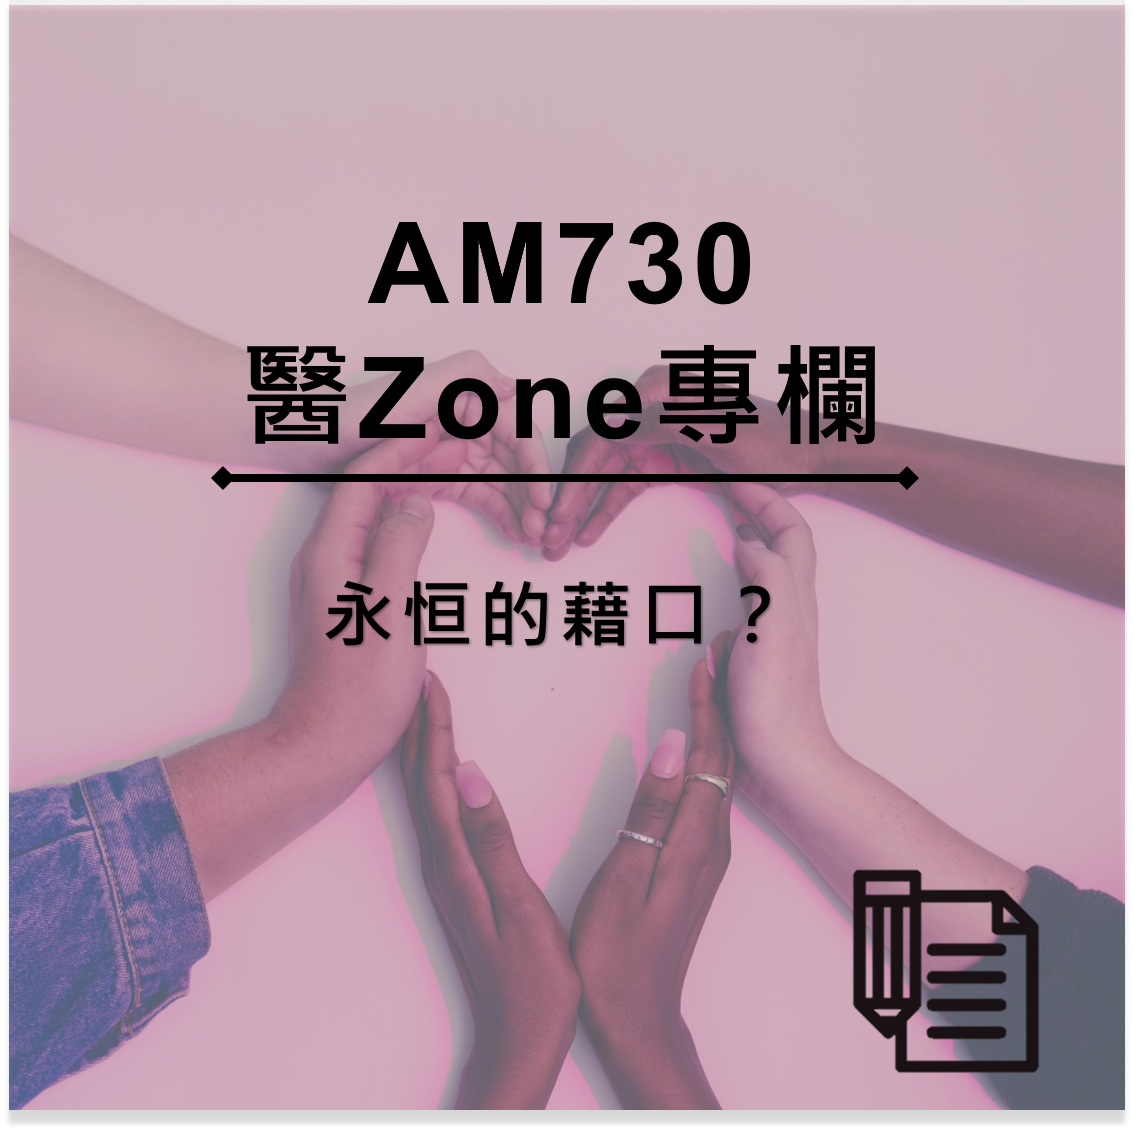 AM730 醫Zone 專欄 - 永恒的藉口？